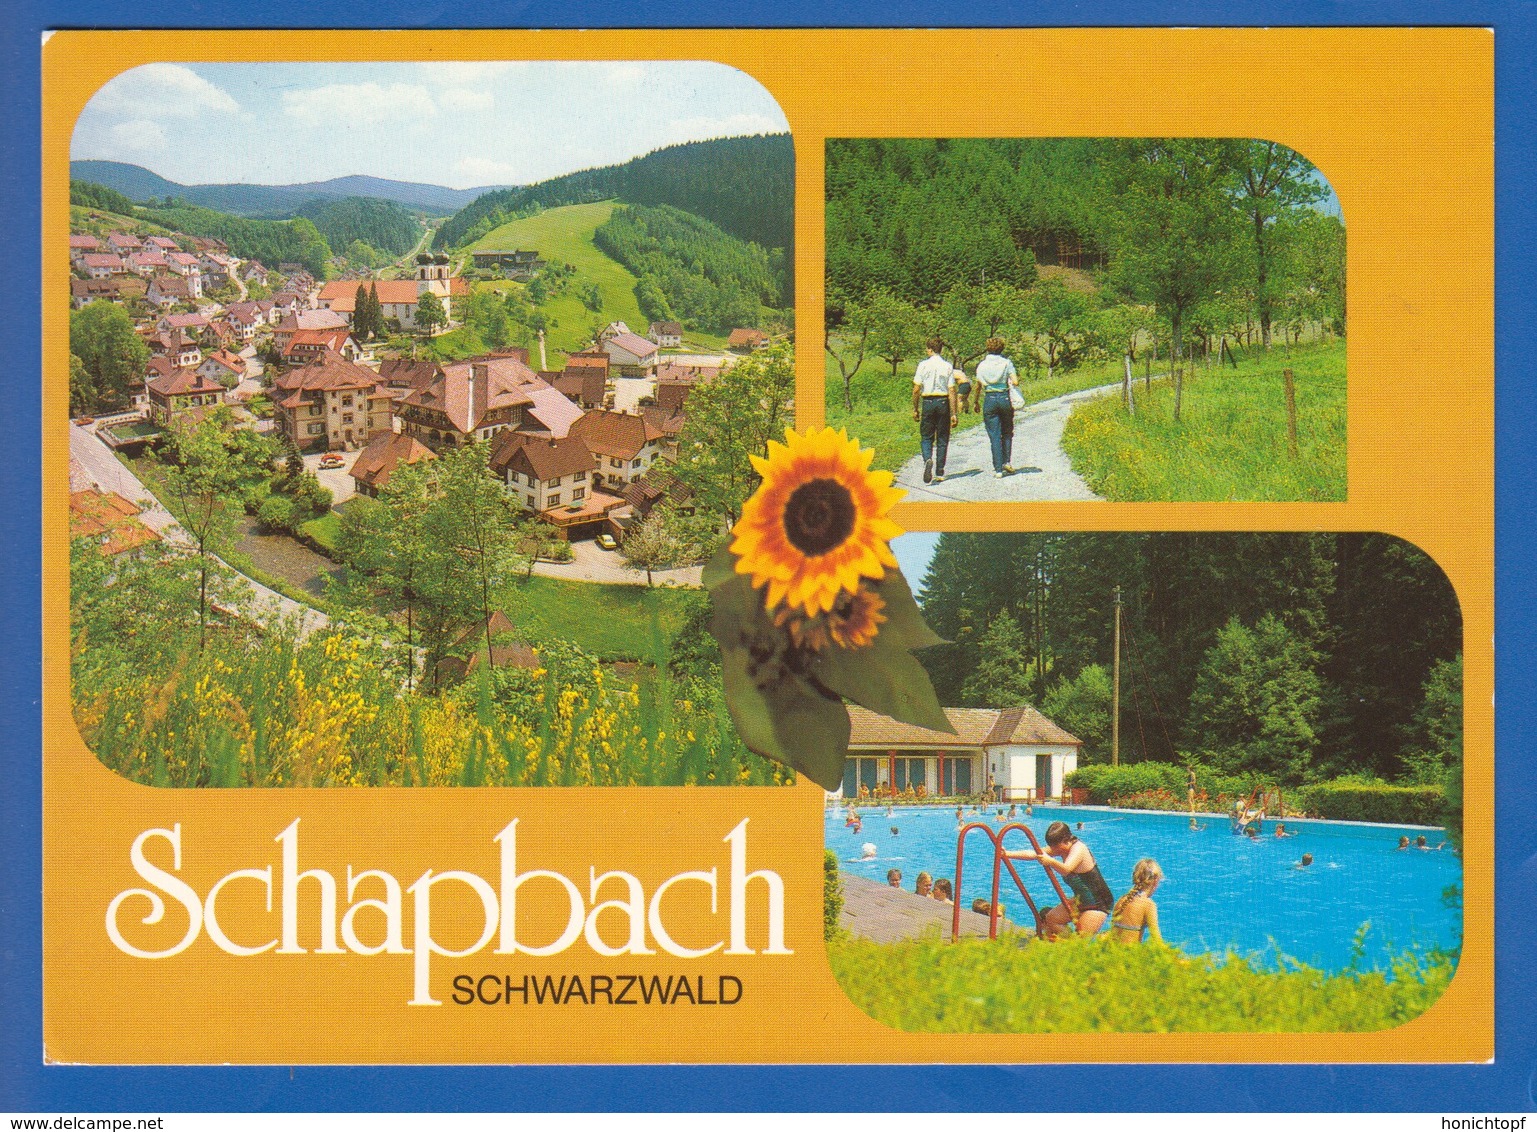 Deutschland; Bad Rippoldsau-Schapbach; Schapbach; Multibildkarte - Bad Rippoldsau - Schapbach